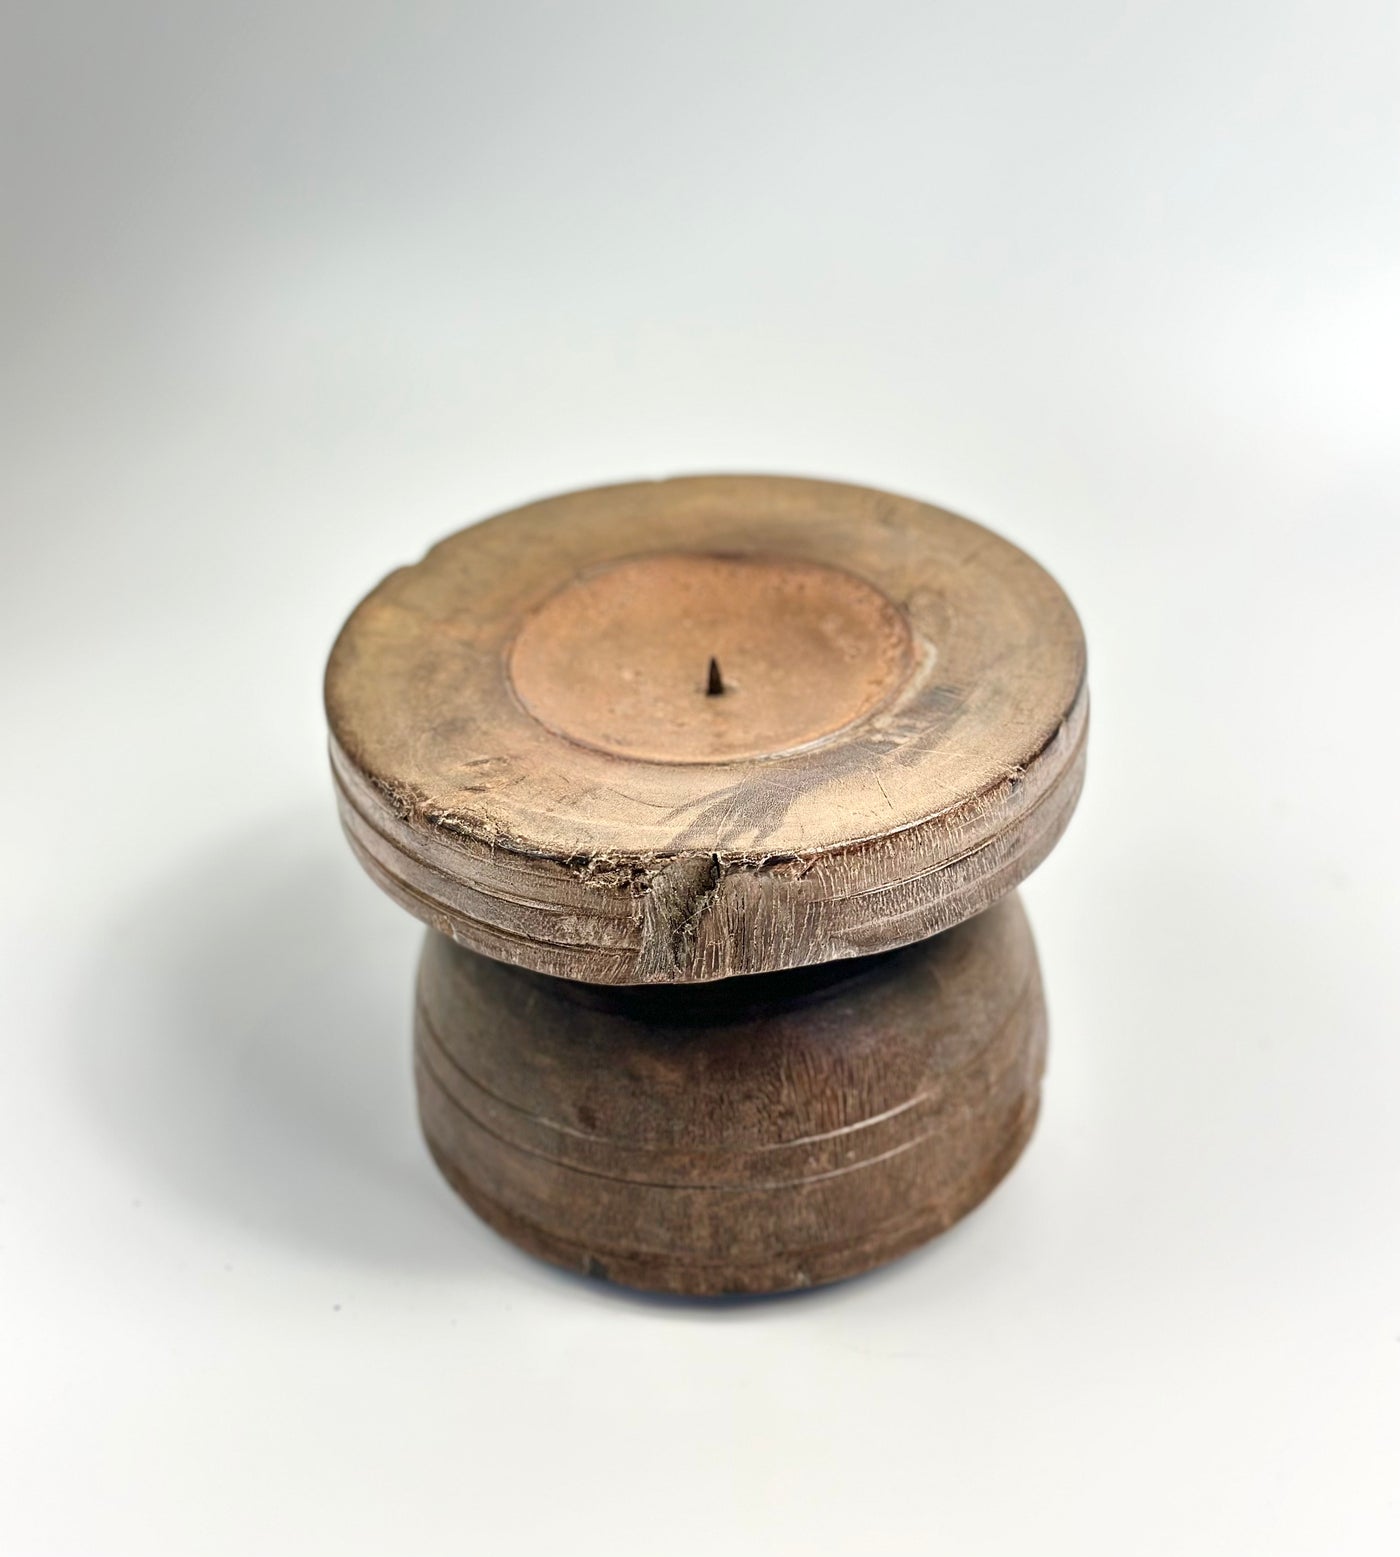 Vintage wooden candlestick